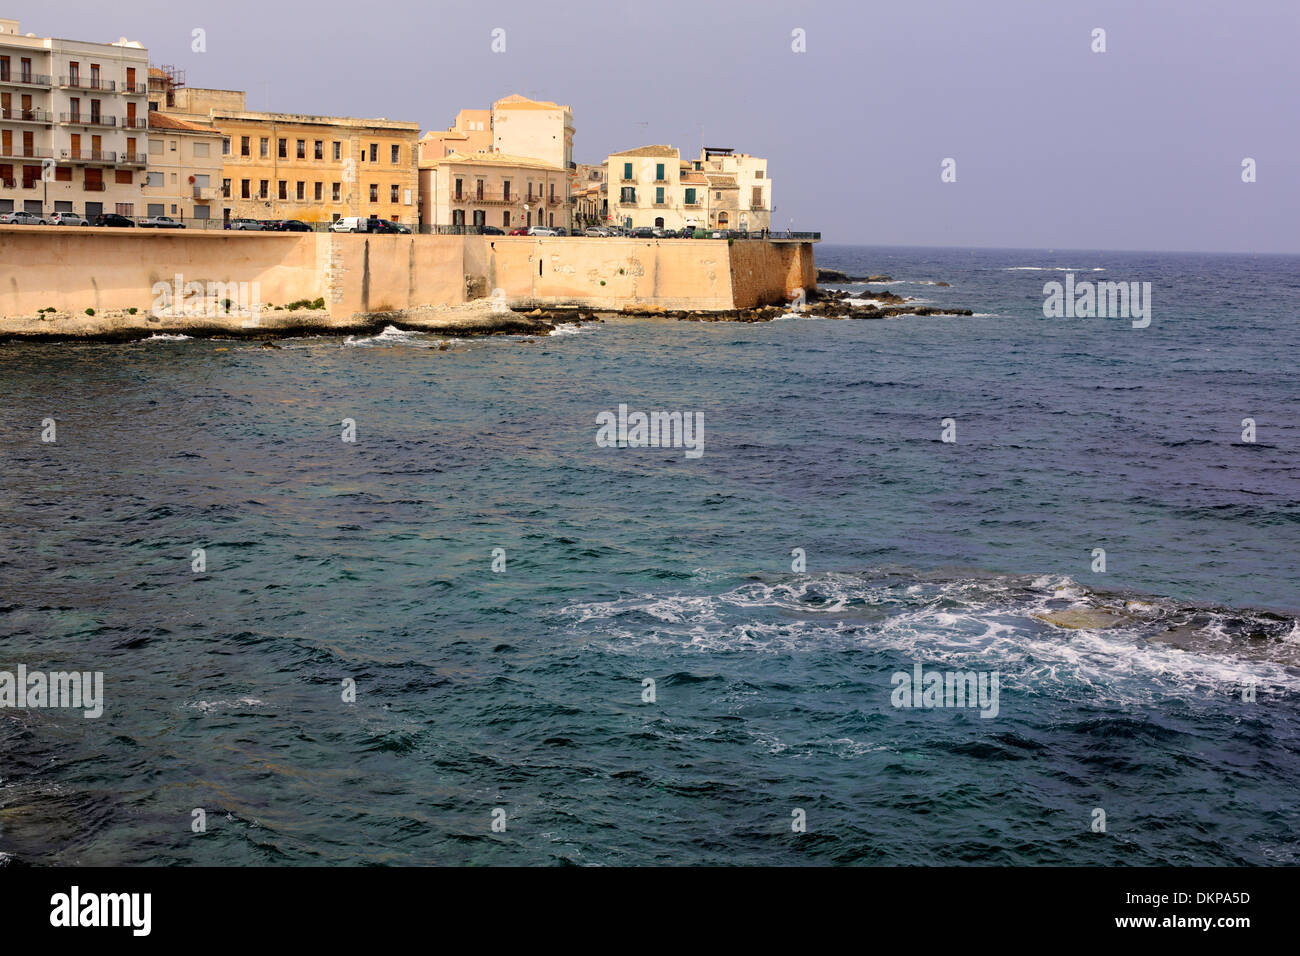 Mediterranean sea, Ortygia, Syracuse, Sicily, Italy Stock Photo